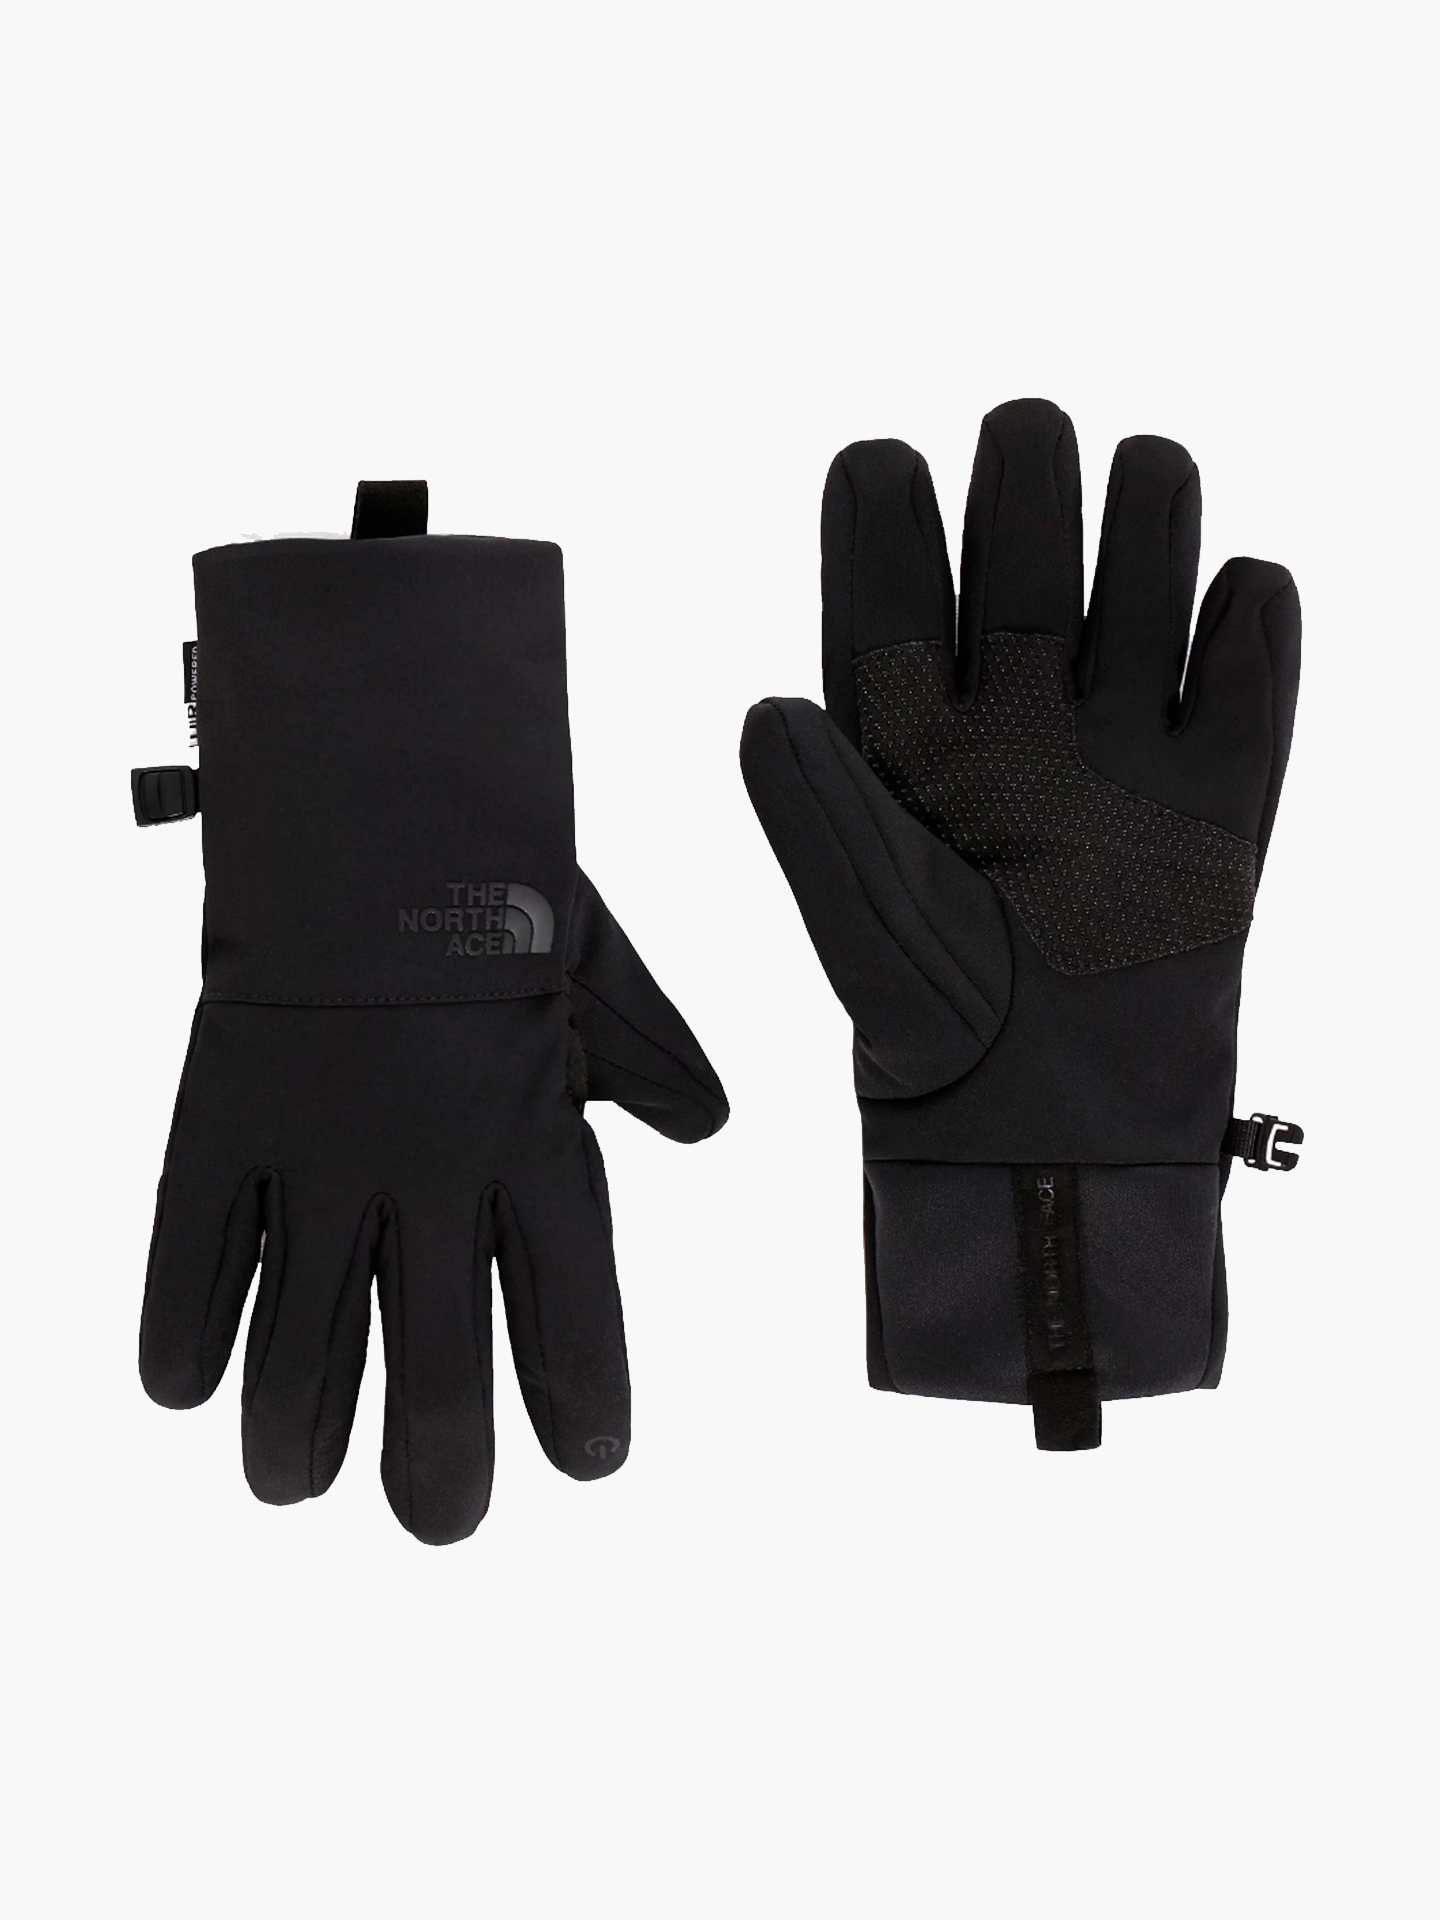 TA4SHDJK3/L Перчатки The North Face Apex Etip Glove Black,L TA4SHDJK3/L